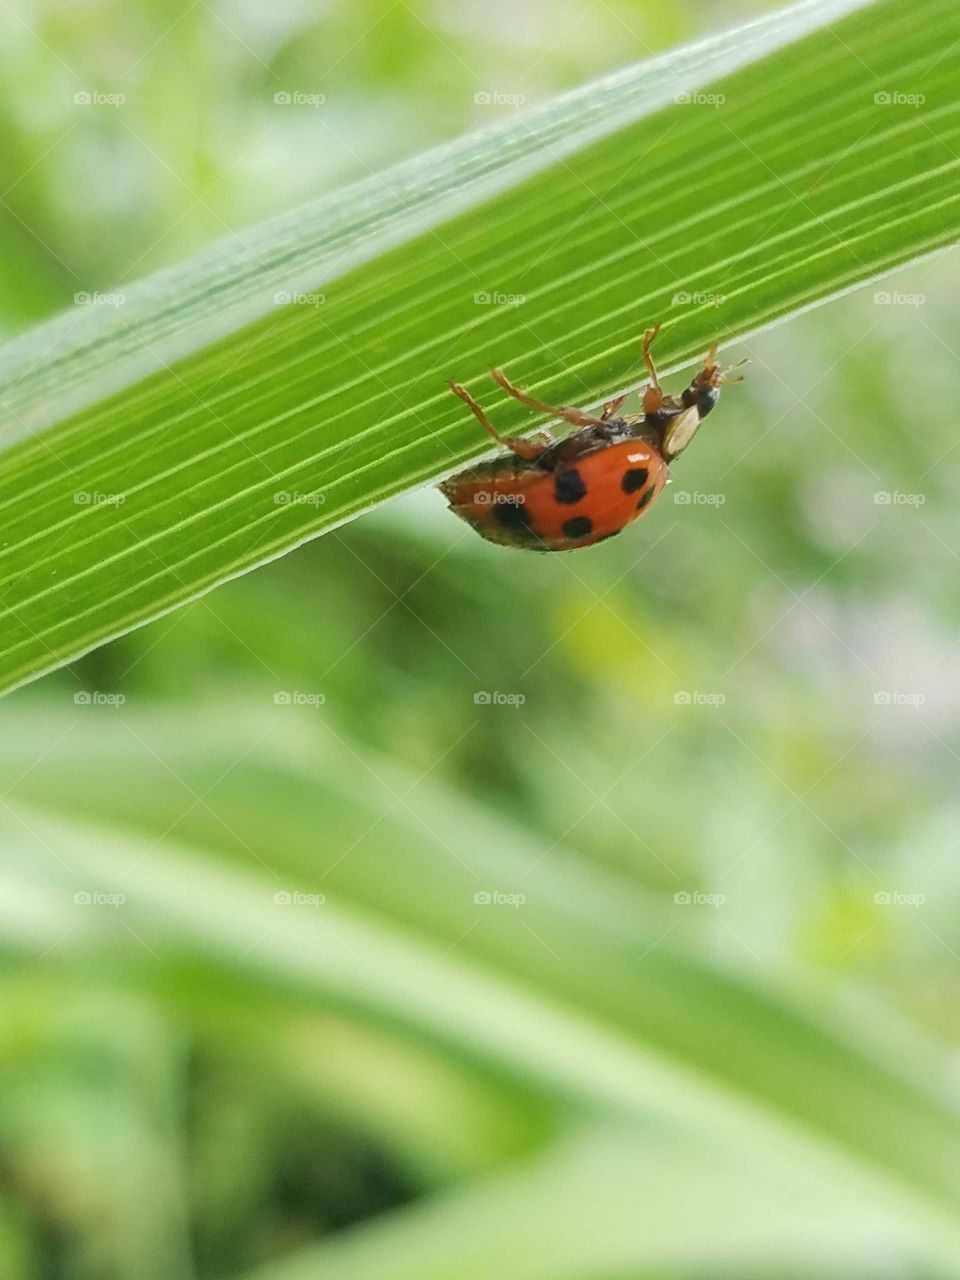 ladybug crawling up leaf, upside down, close-up